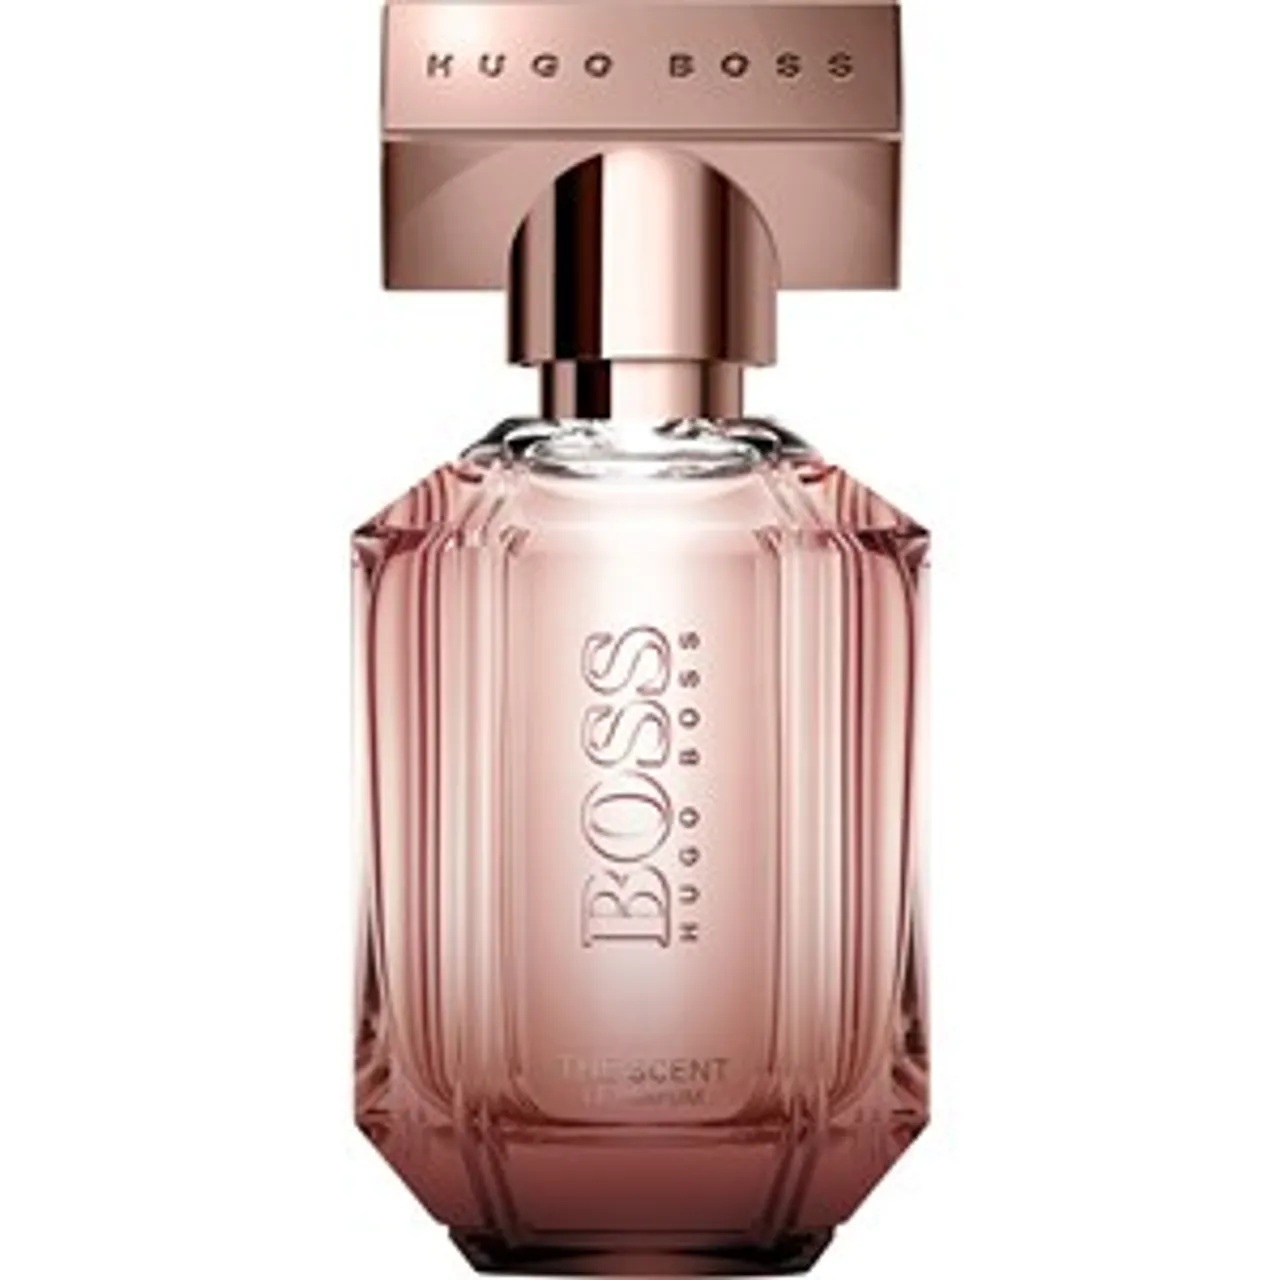 Hugo Boss BOSS The Scent For Her Le Parfum Damen